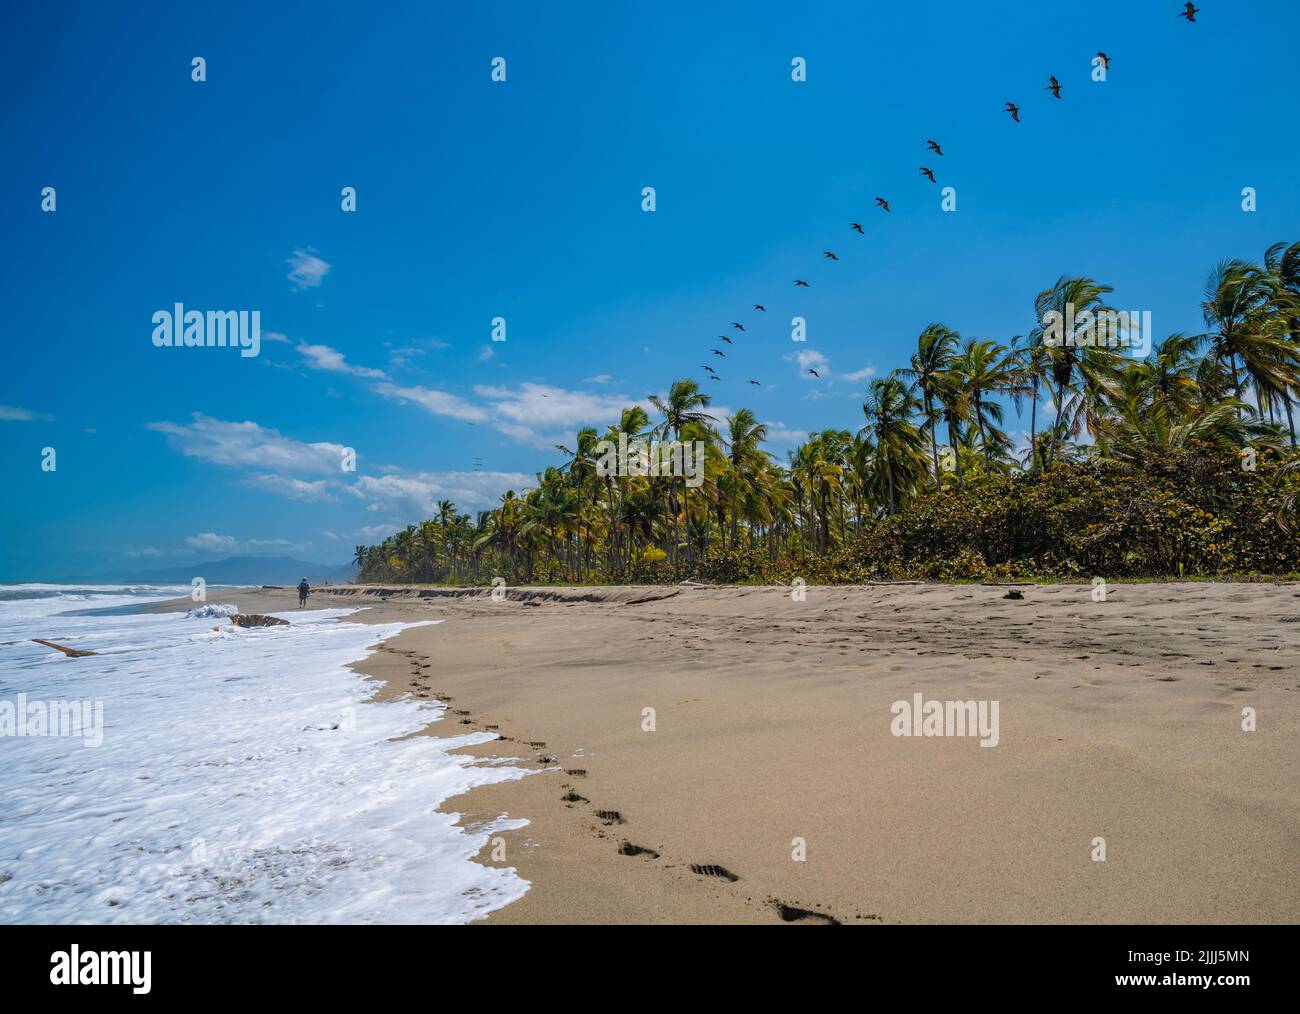 Preciosa playa caribeña. Playa Costeno en la costa caribeña de Colombia Foto de stock